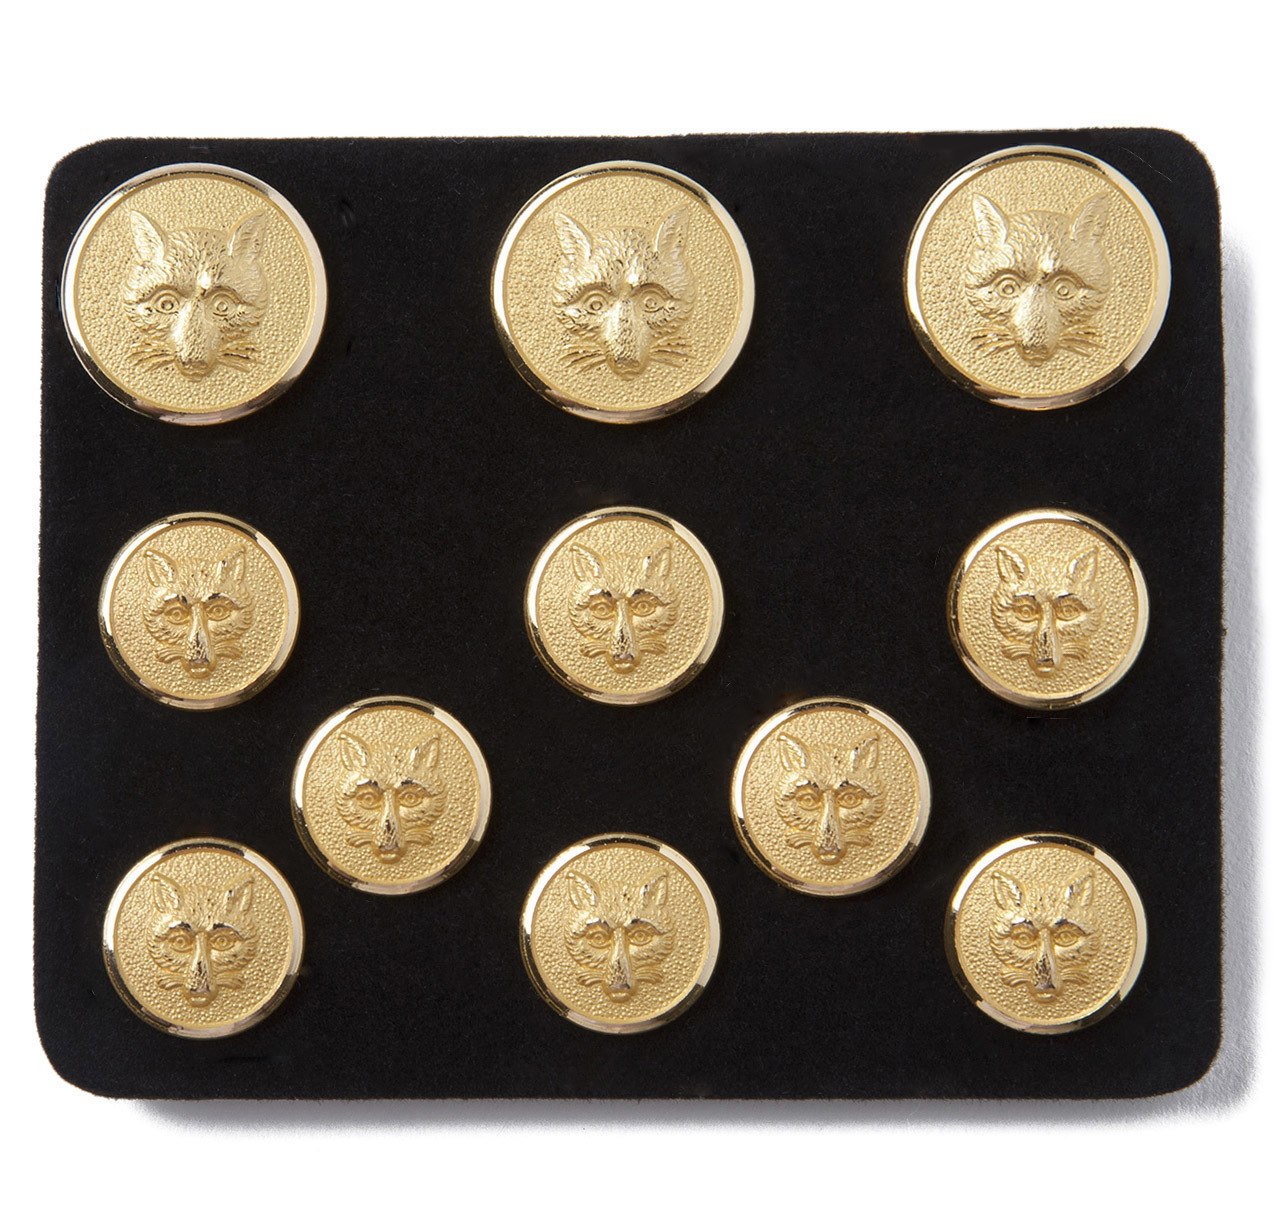 Monogram Blazer Buttons - The Ben Silver Collection